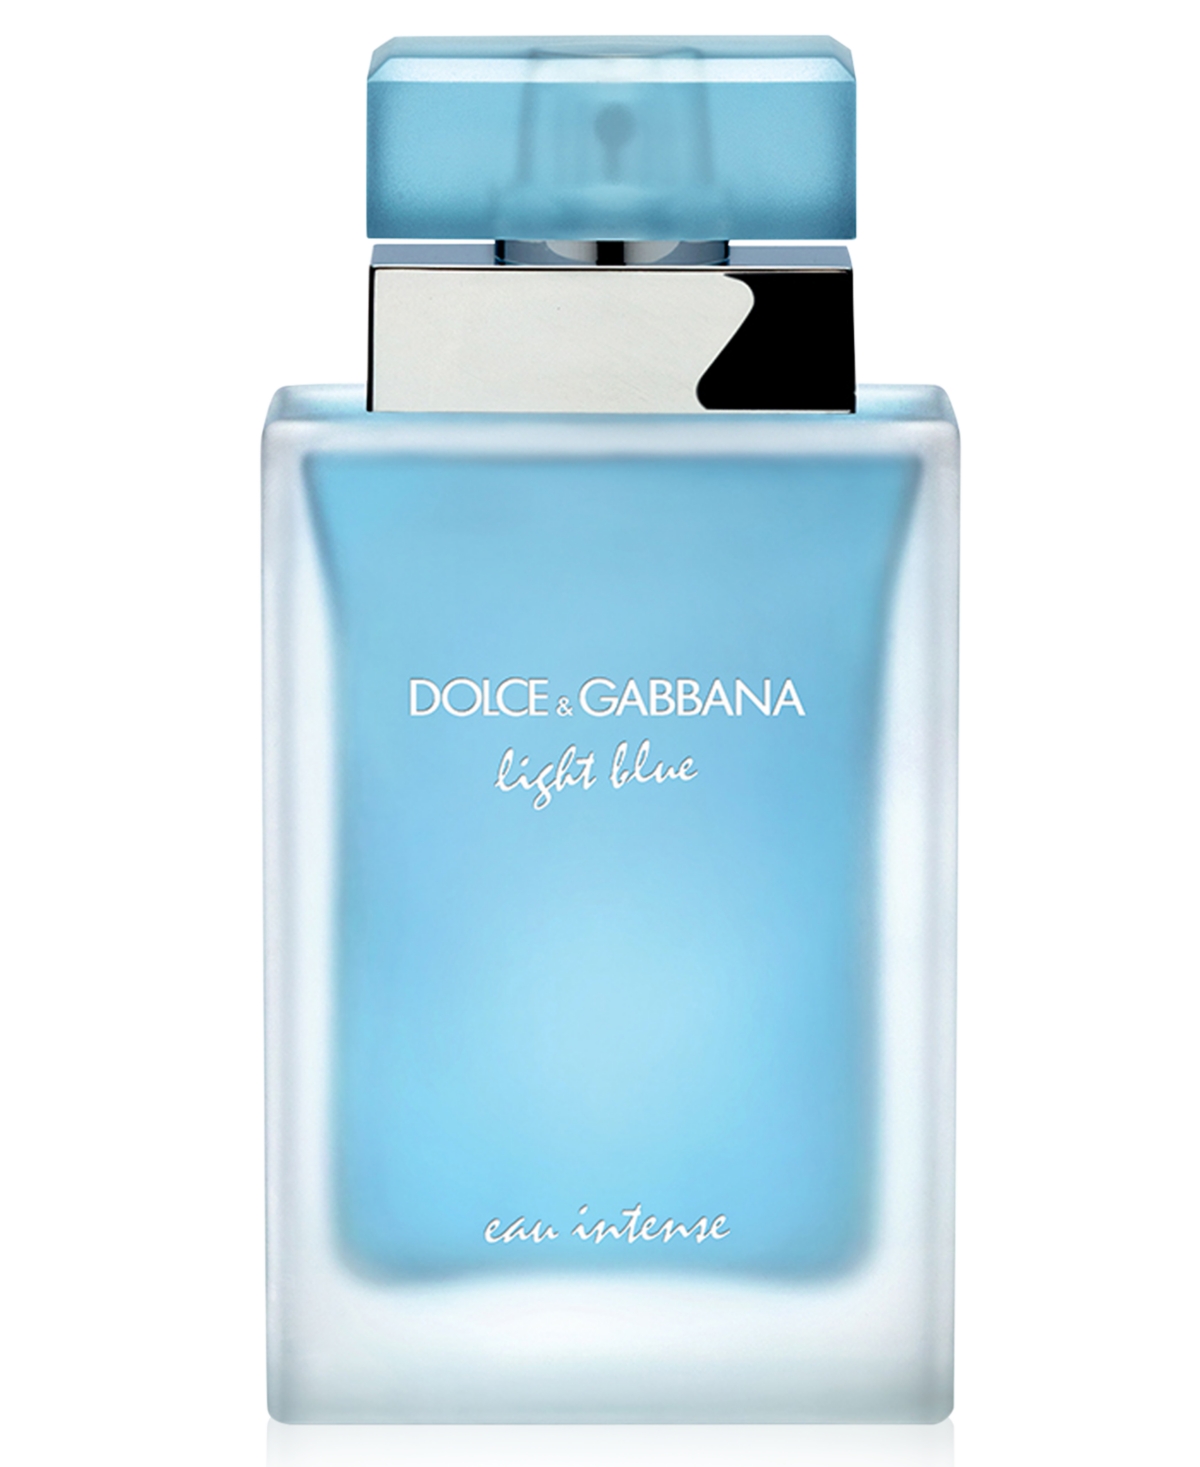 Dolce&gabbana Dolce&Gabanna Light Blue Eau Intense Eau de Parfum Spray, 1.6 oz